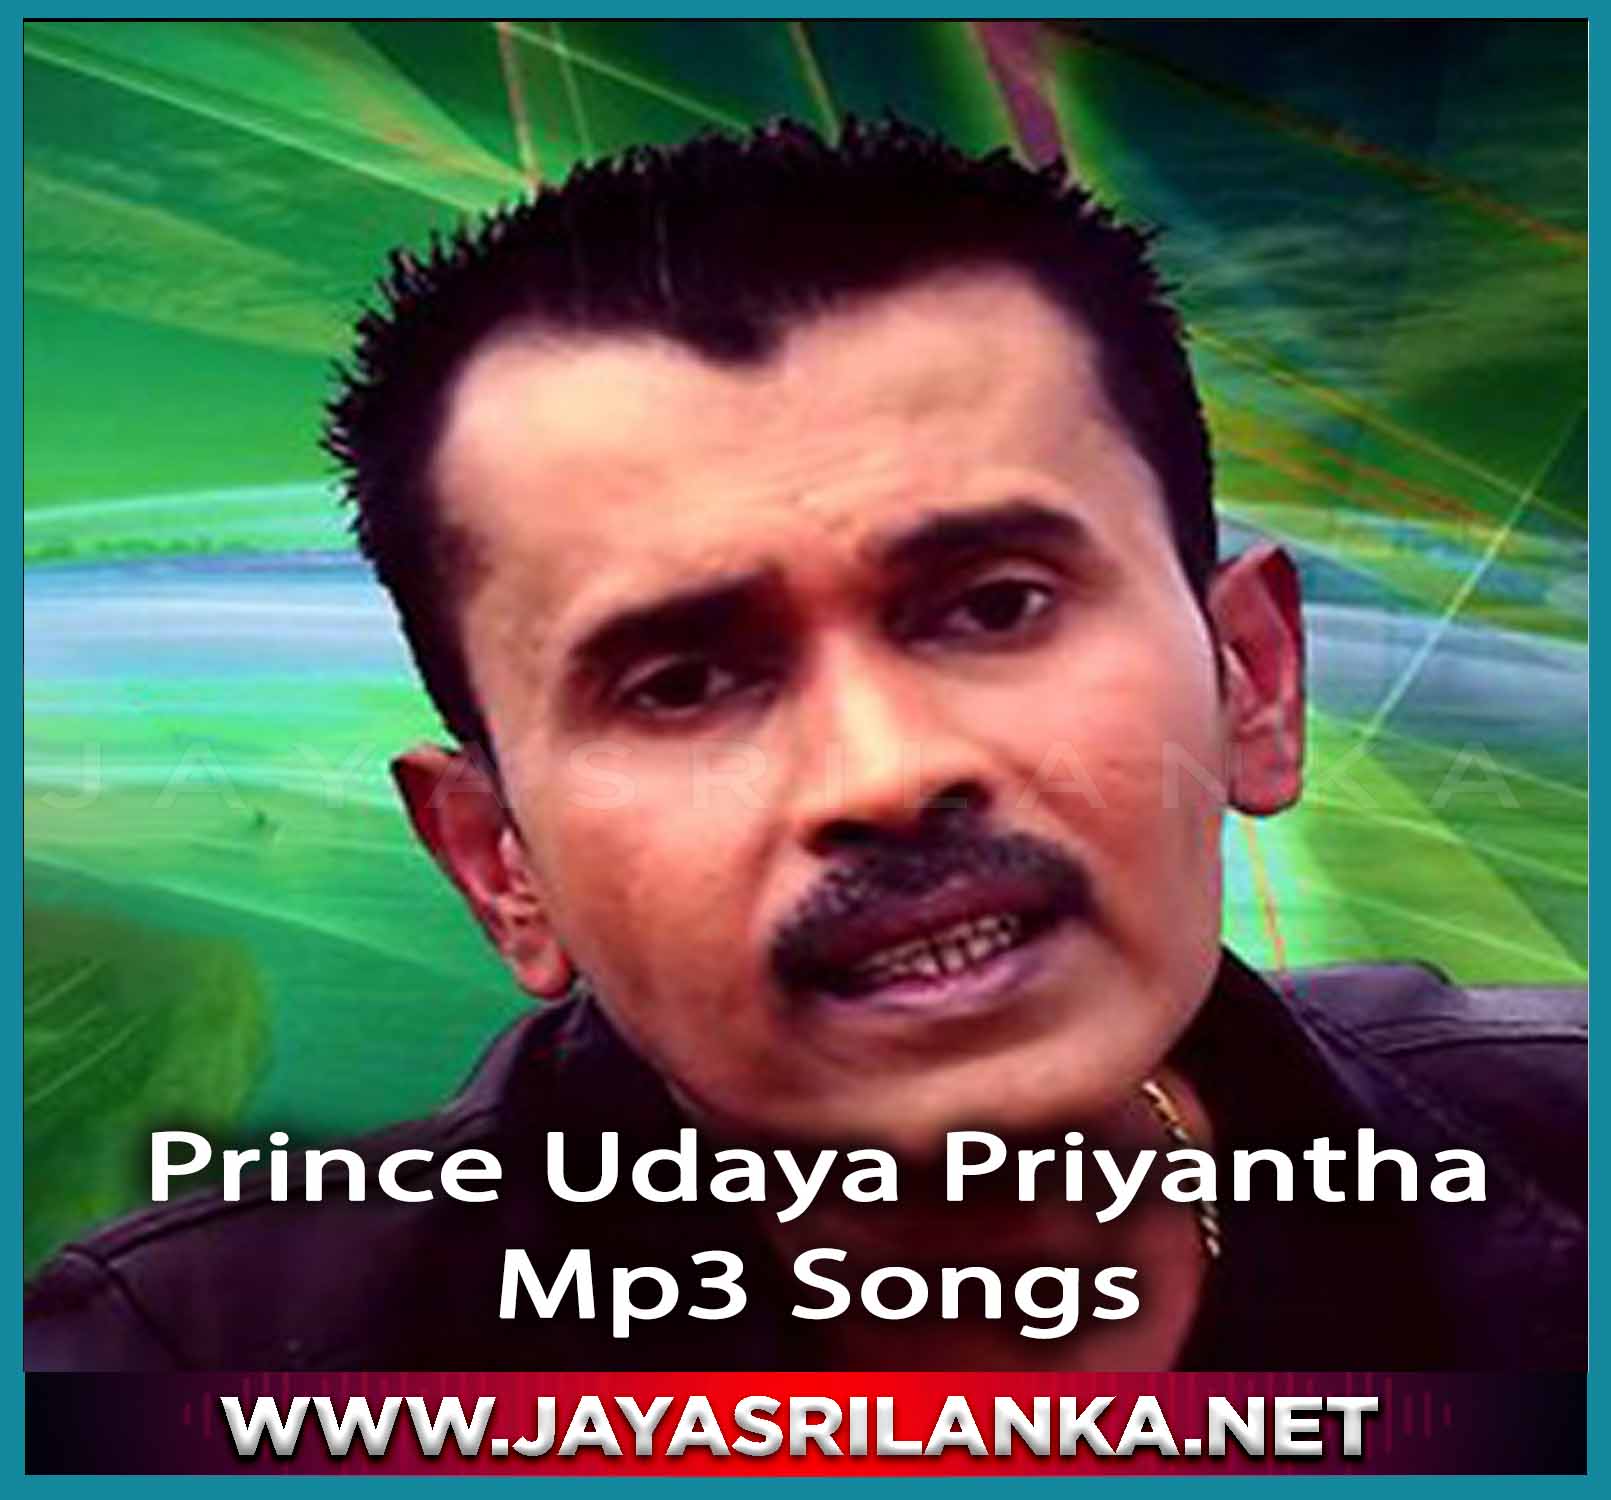 Prince Udaya Priyantha  